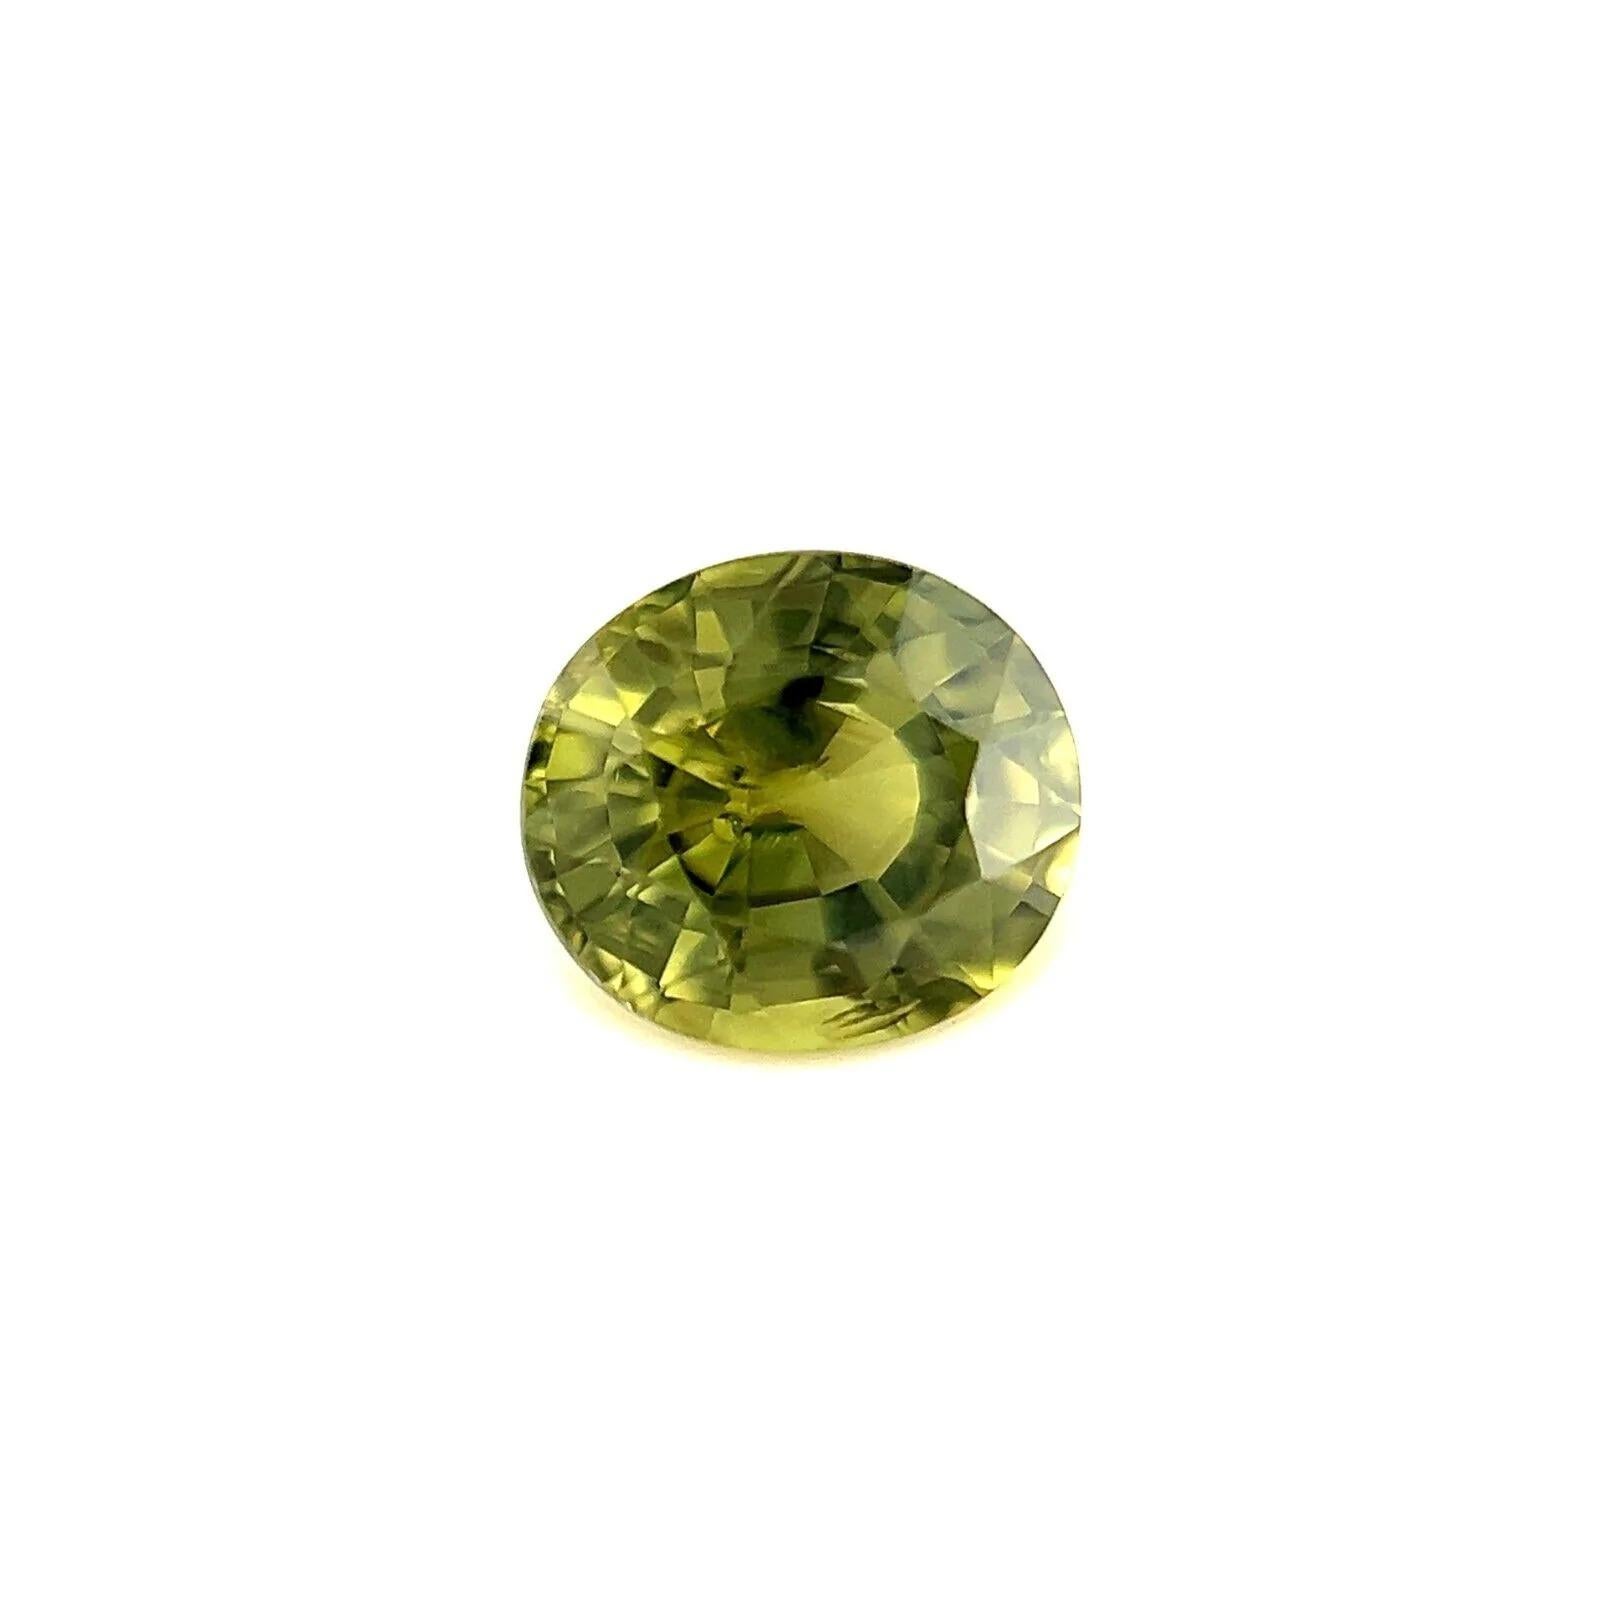 Couleur unique 0.95ct rare jaune vert saphir australien coupe ovale 5.8x5.2mm

Fine pierre précieuse saphir vert jaune naturel.
0.95 Carat avec une couleur unique jaune vert vif et une bonne clarté, une pierre très propre. Elle présente également